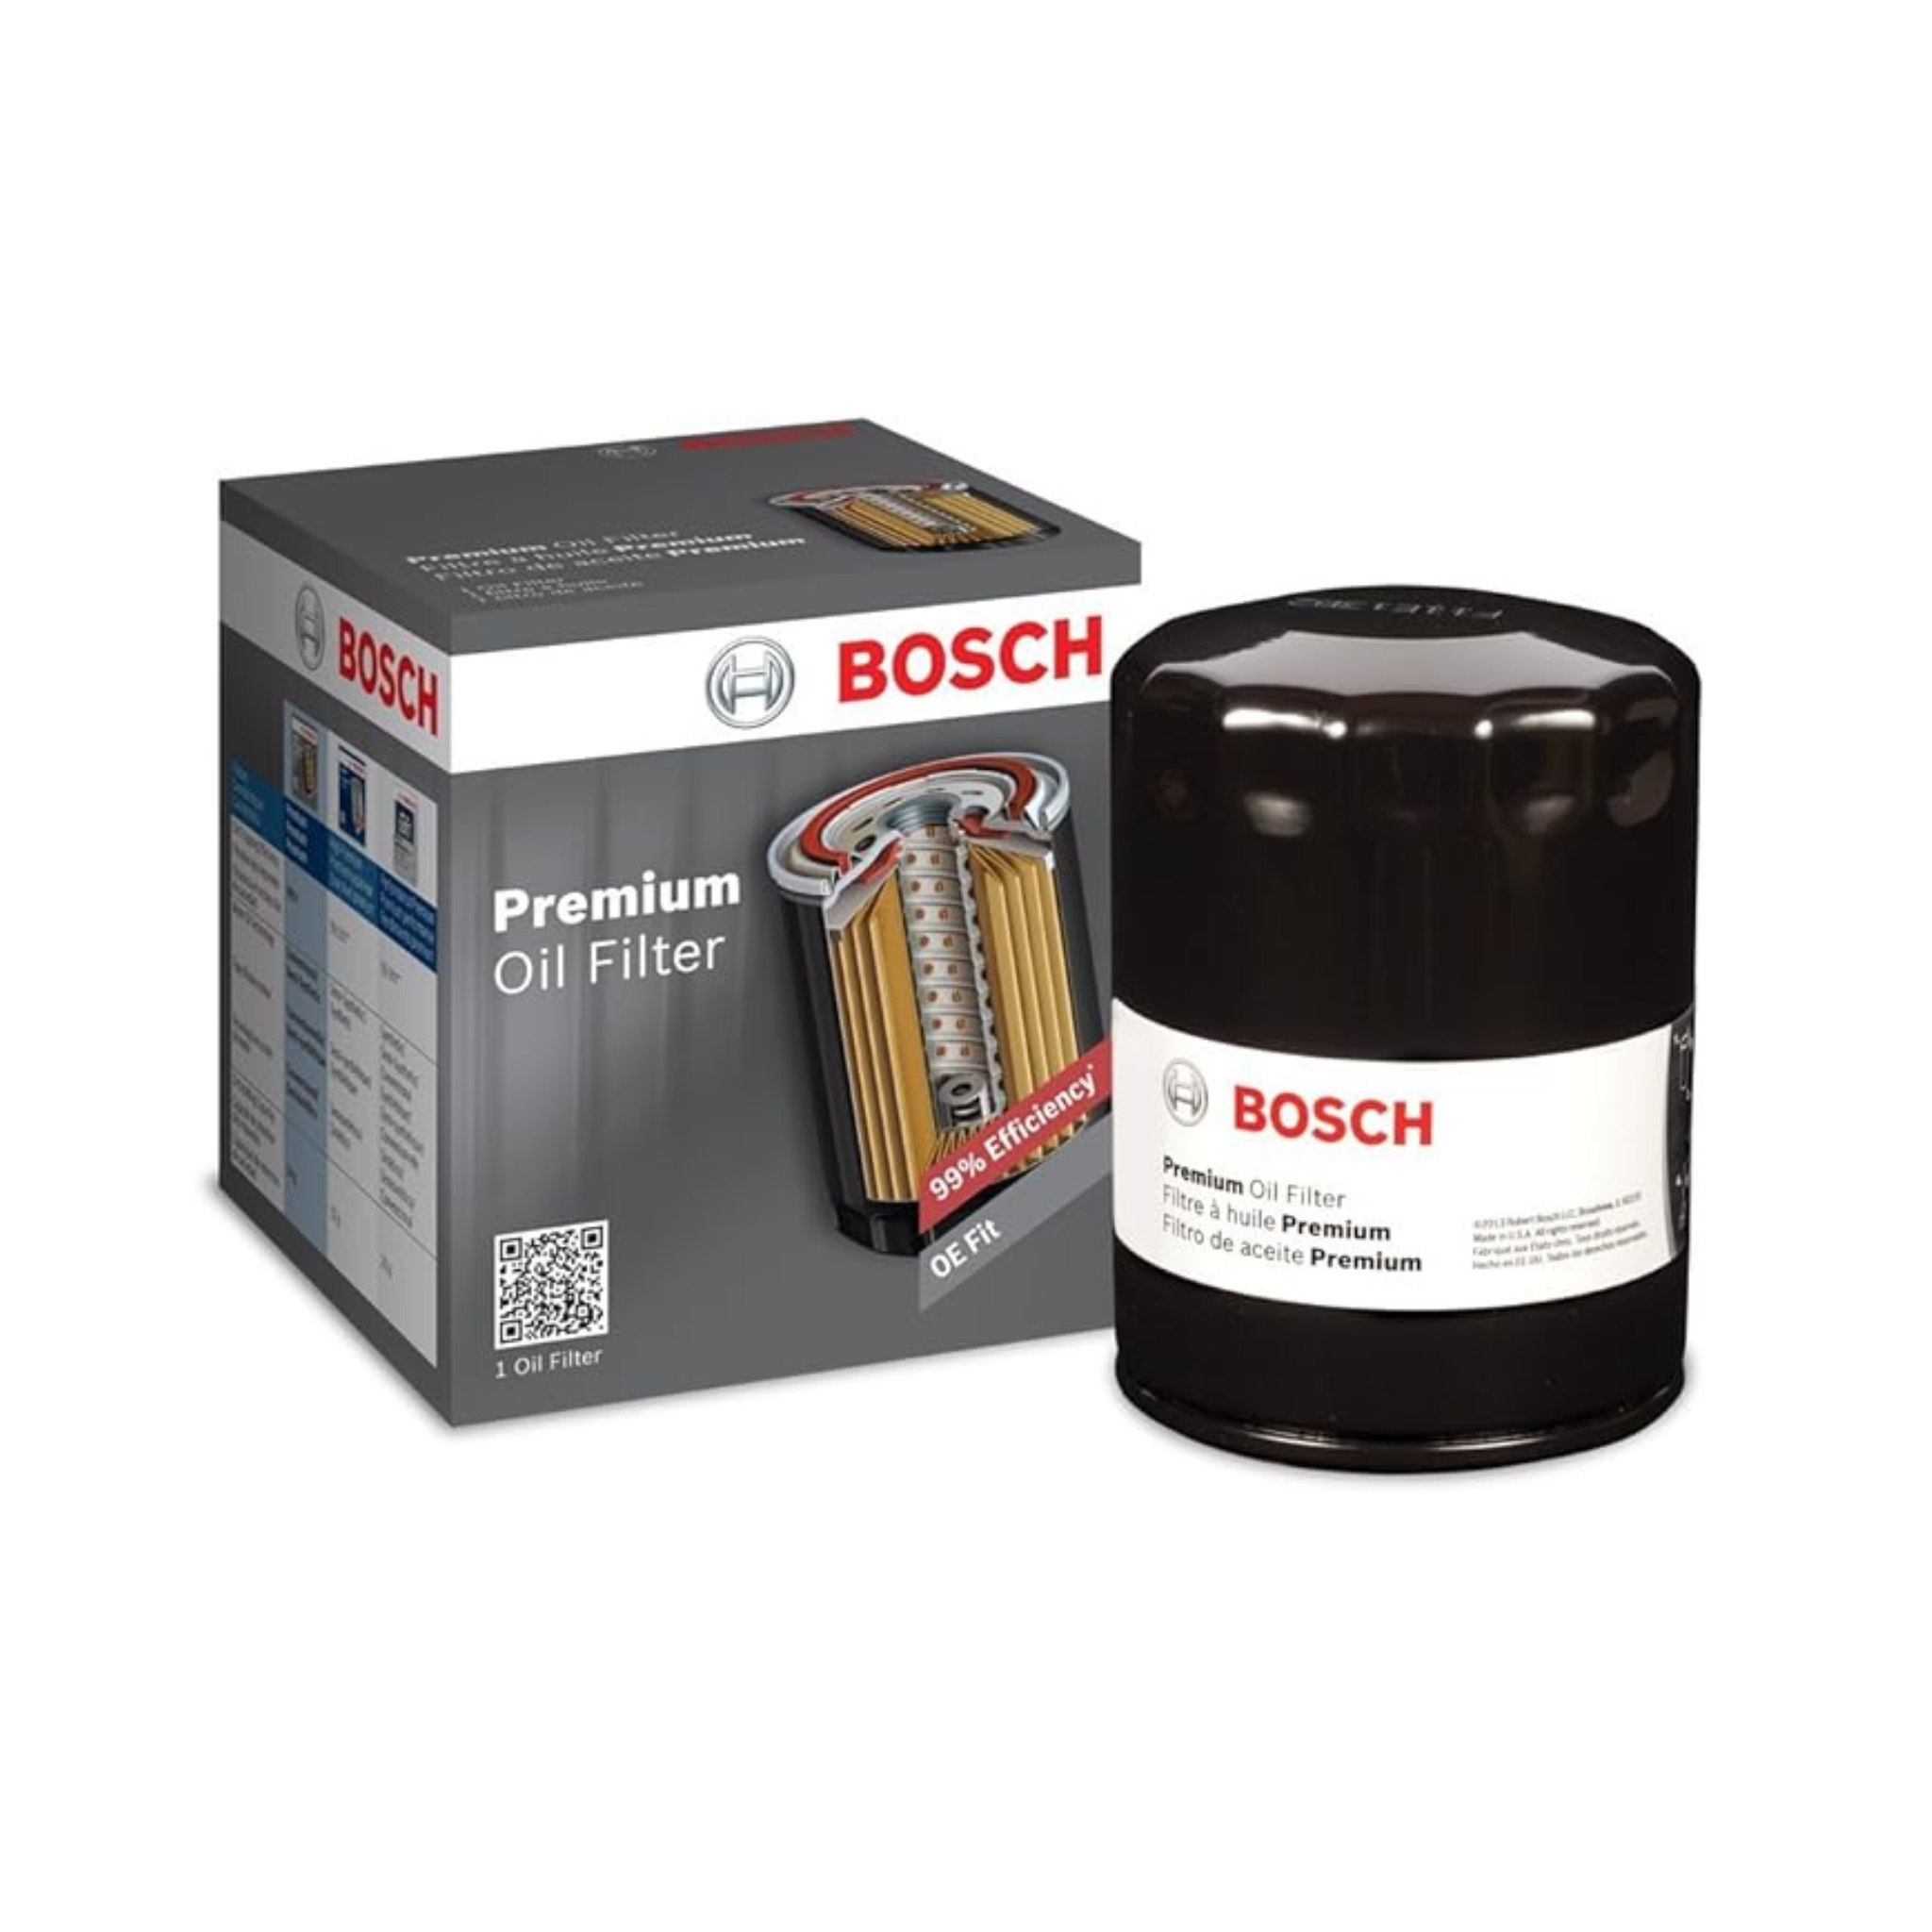 Bosch 3312 Filtech Oil Filter